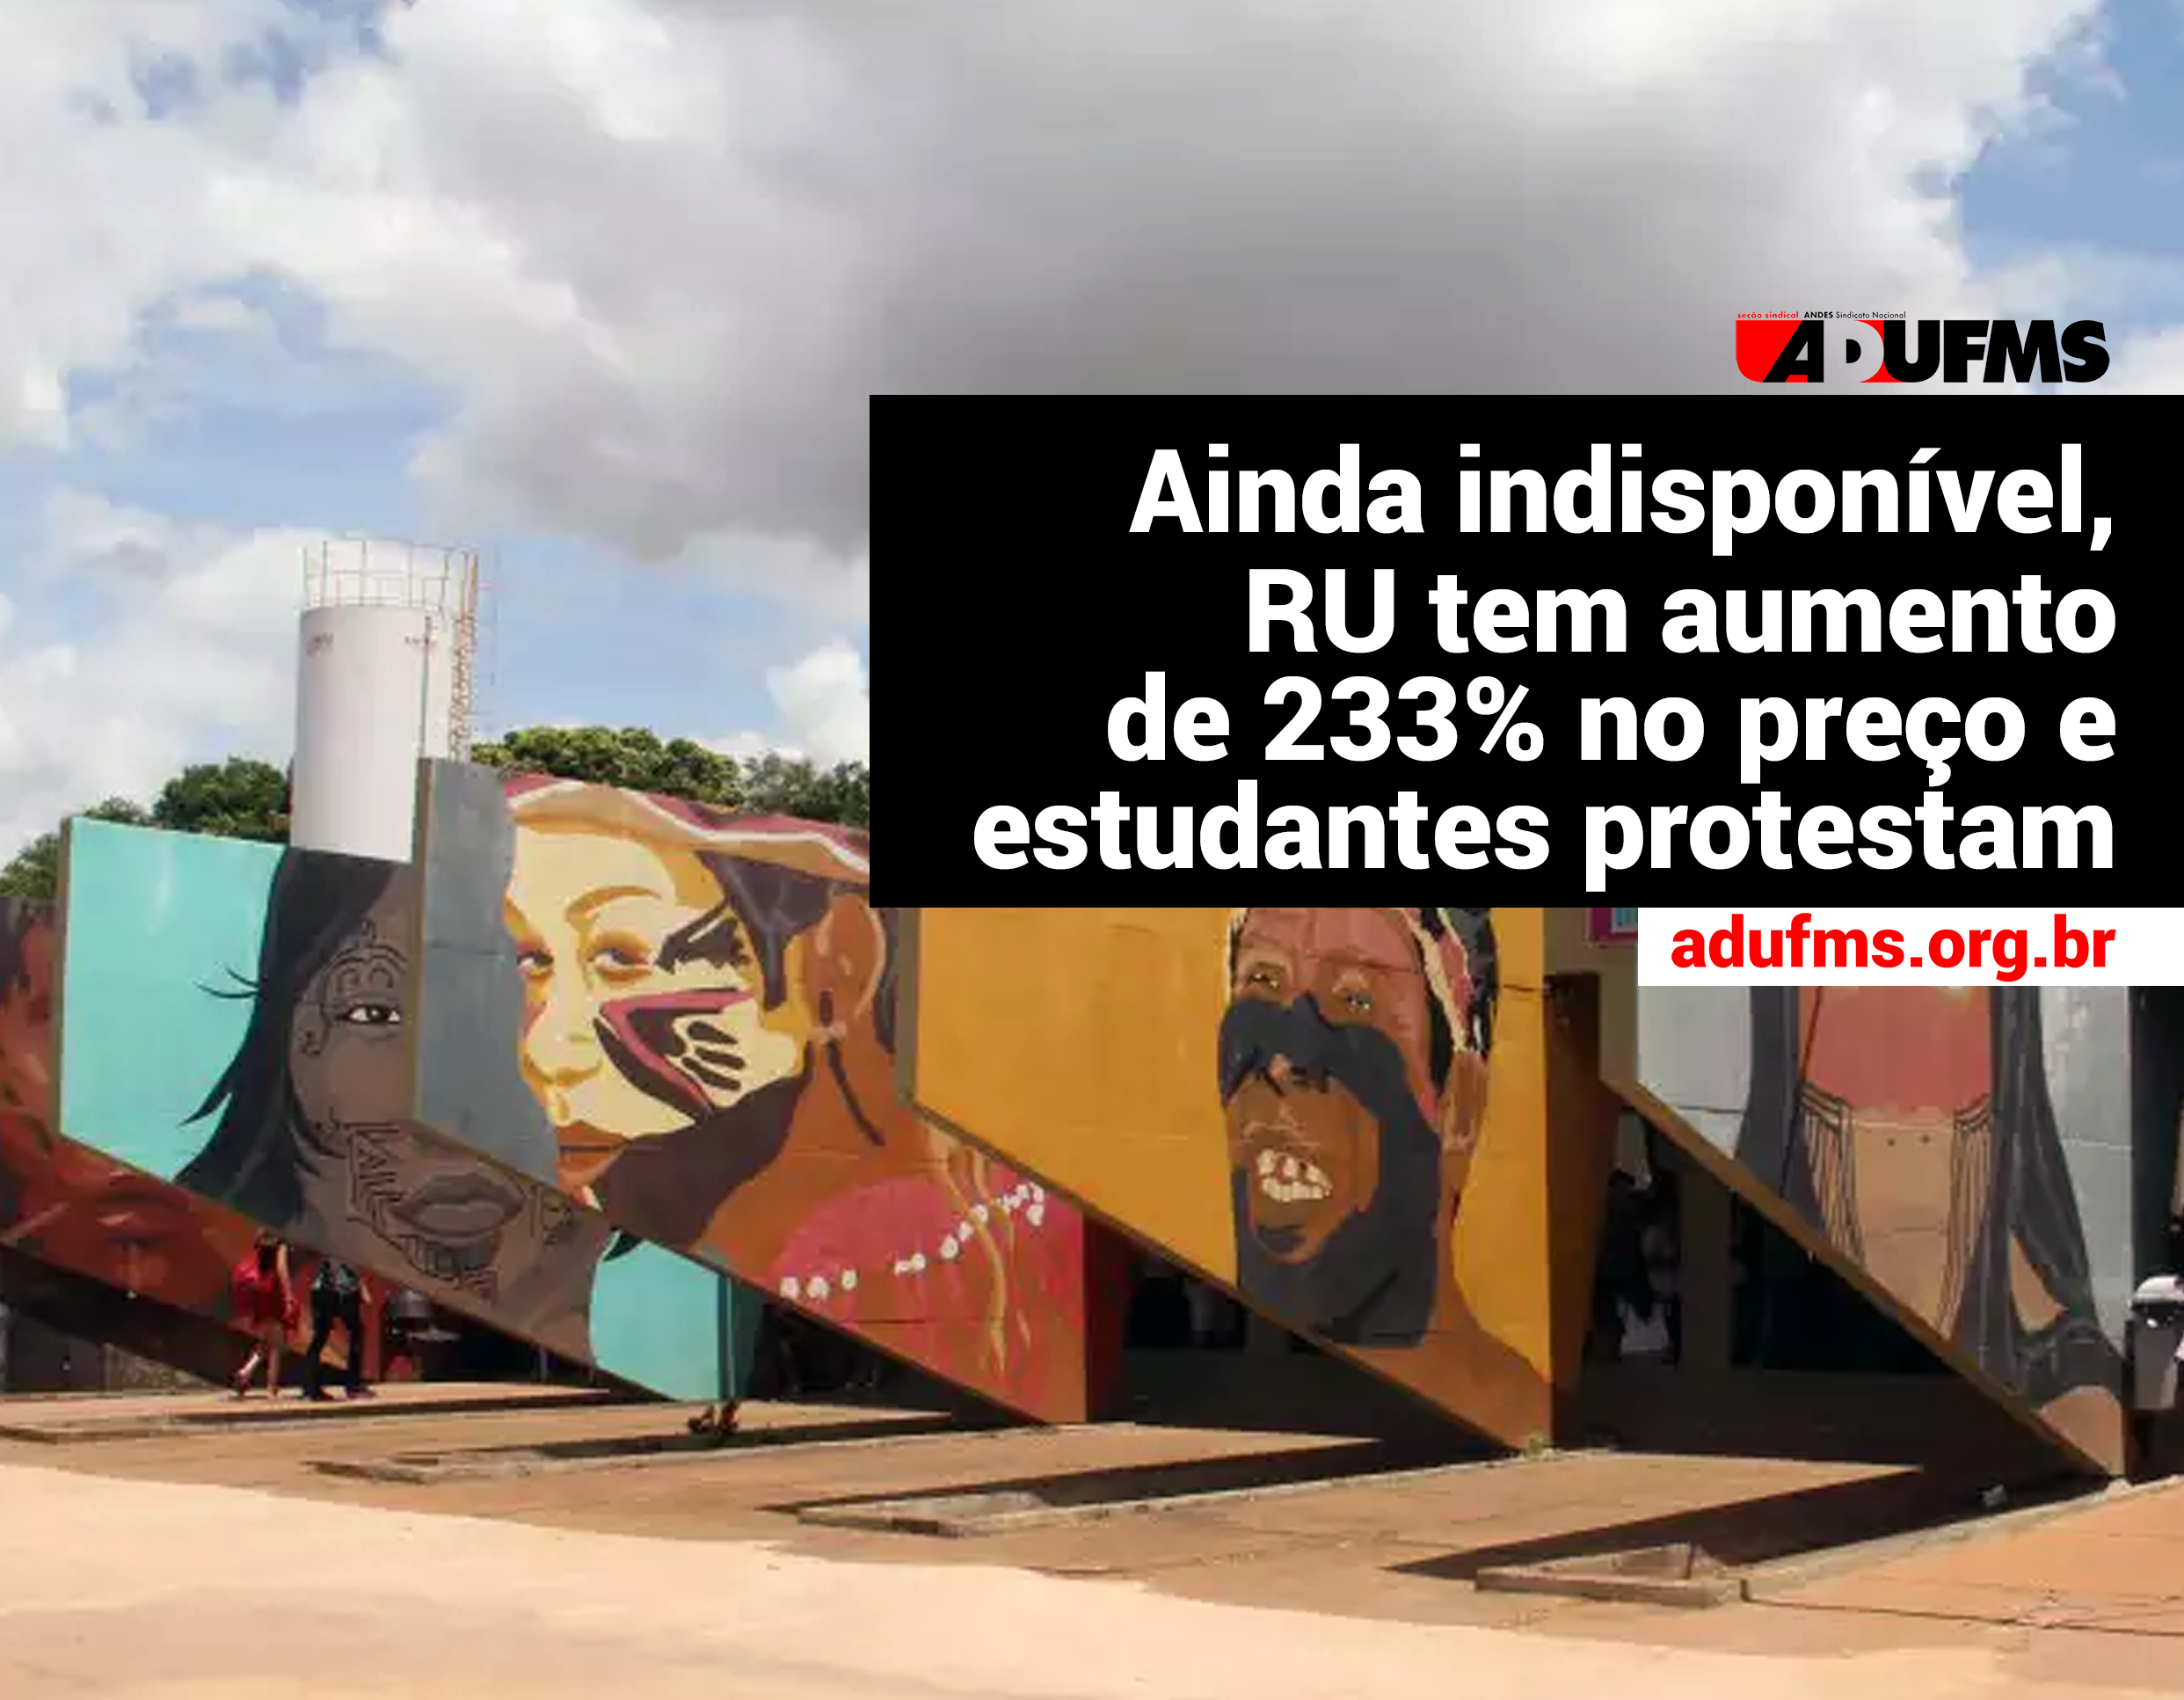 Ainda indisponível, RU tem aumento de 233% no preço e estudantes protestam